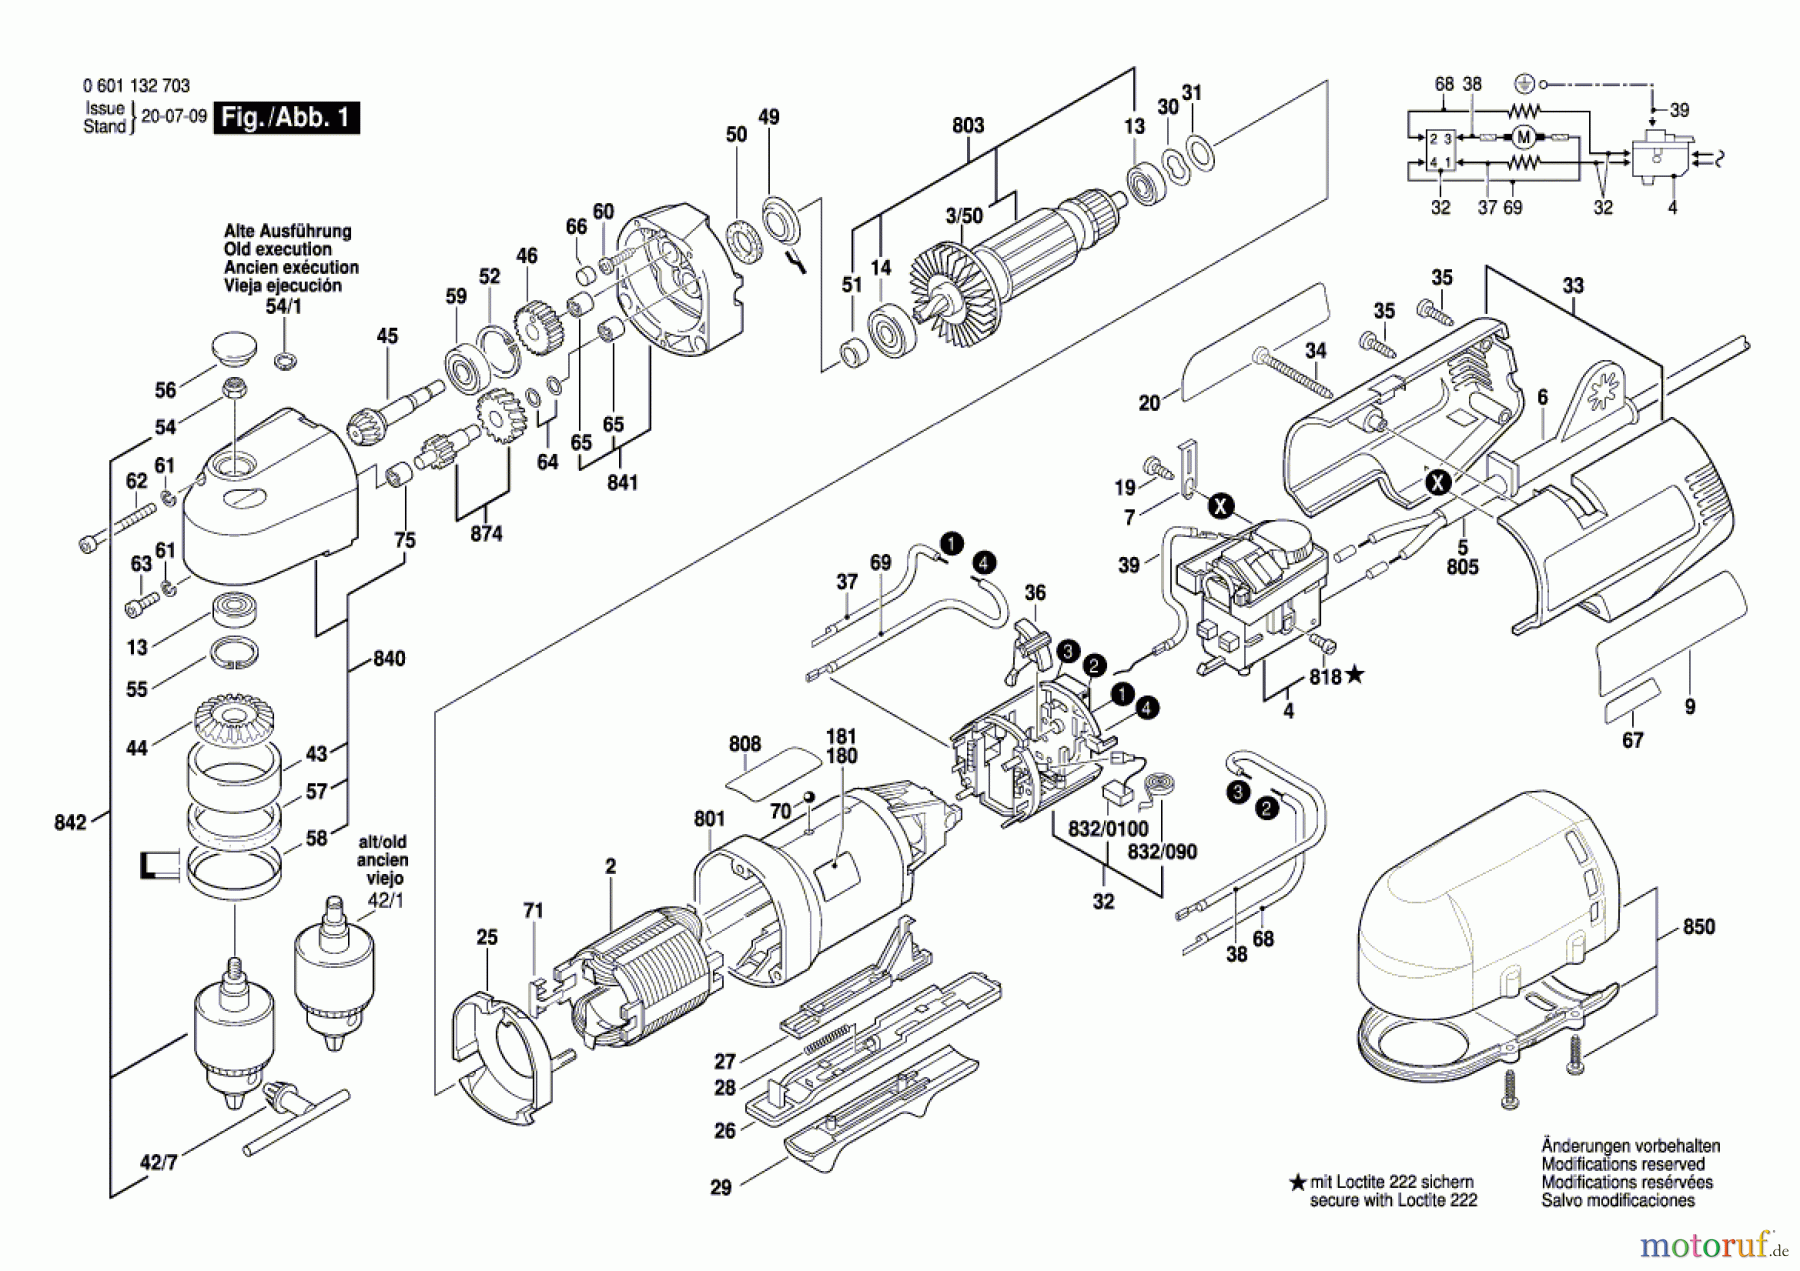  Bosch Werkzeug Winkelbohrmaschine GWB 10 RE Seite 1